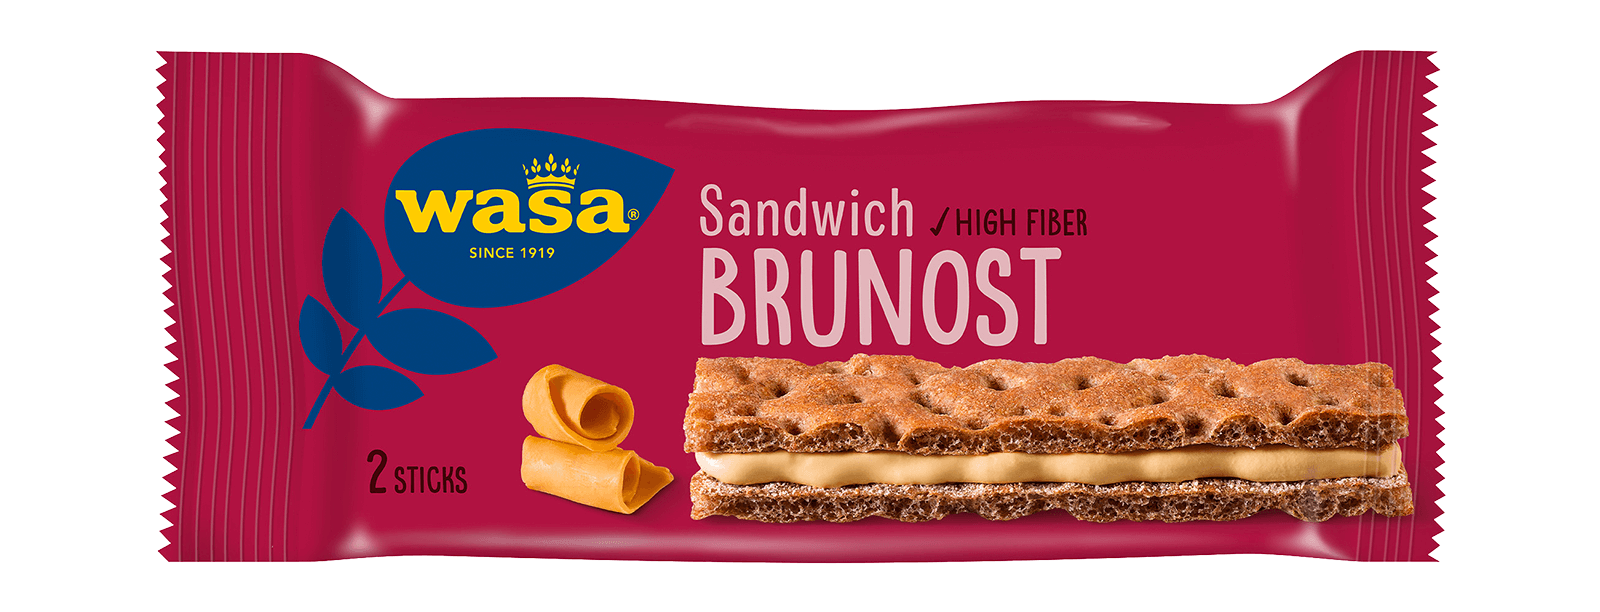 Sandwich Brunost